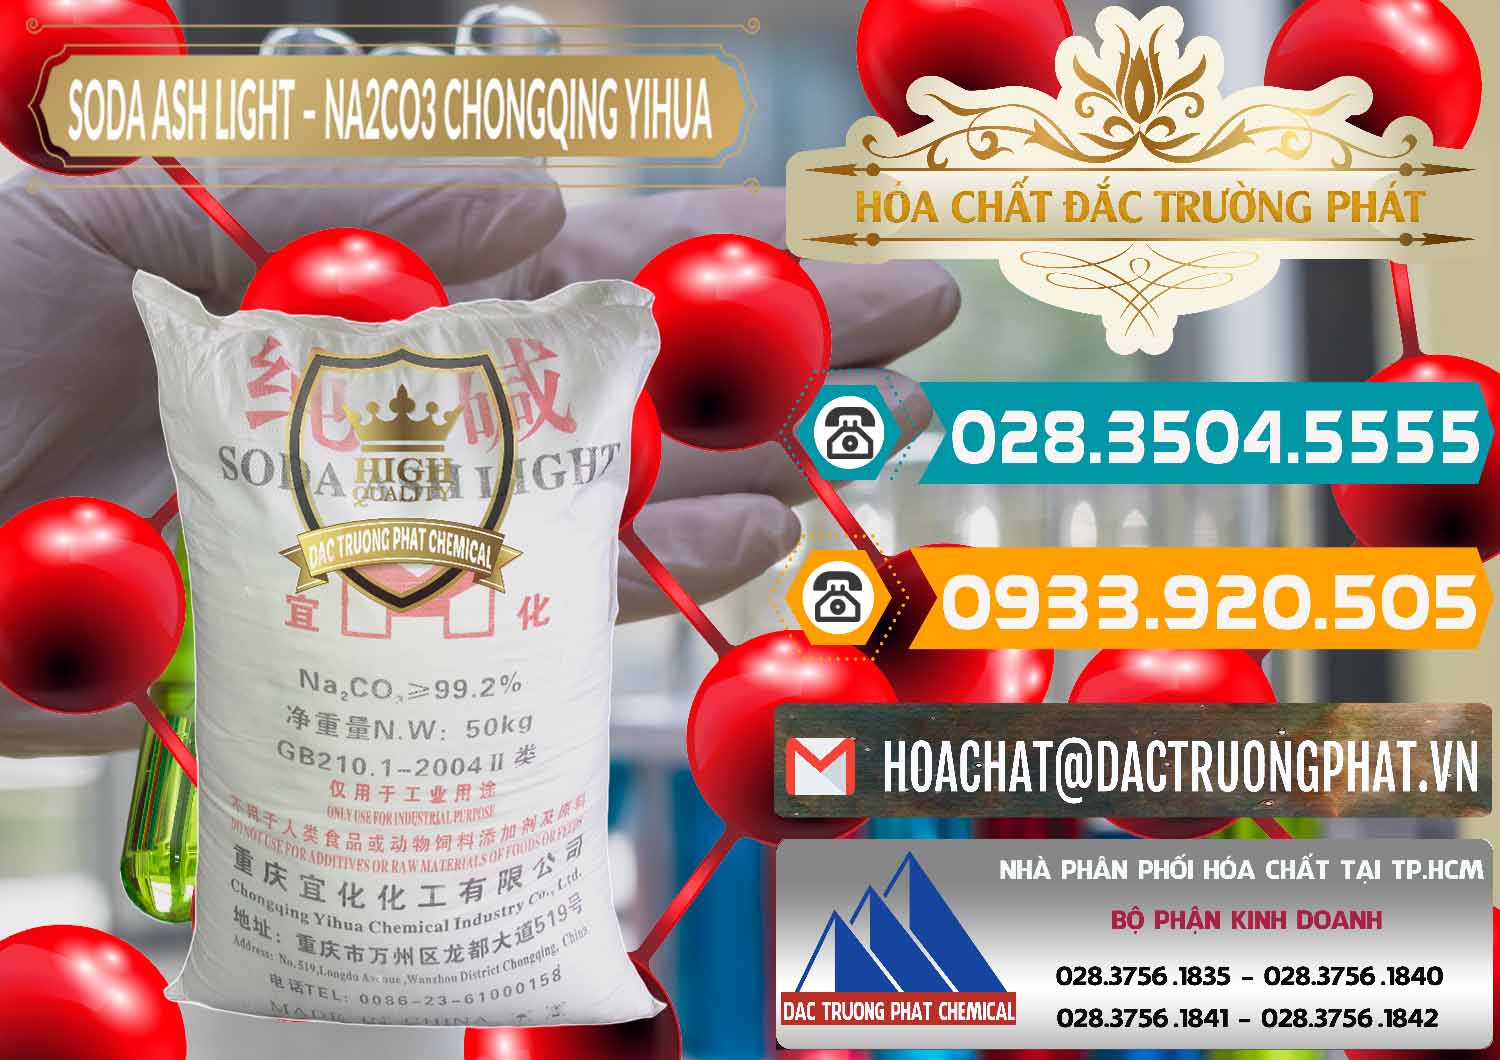 Chuyên kinh doanh ( bán ) Soda Ash Light - NA2CO3 Chongqing Yihua Trung Quốc China - 0129 - Chuyên cung cấp - kinh doanh hóa chất tại TP.HCM - congtyhoachat.vn